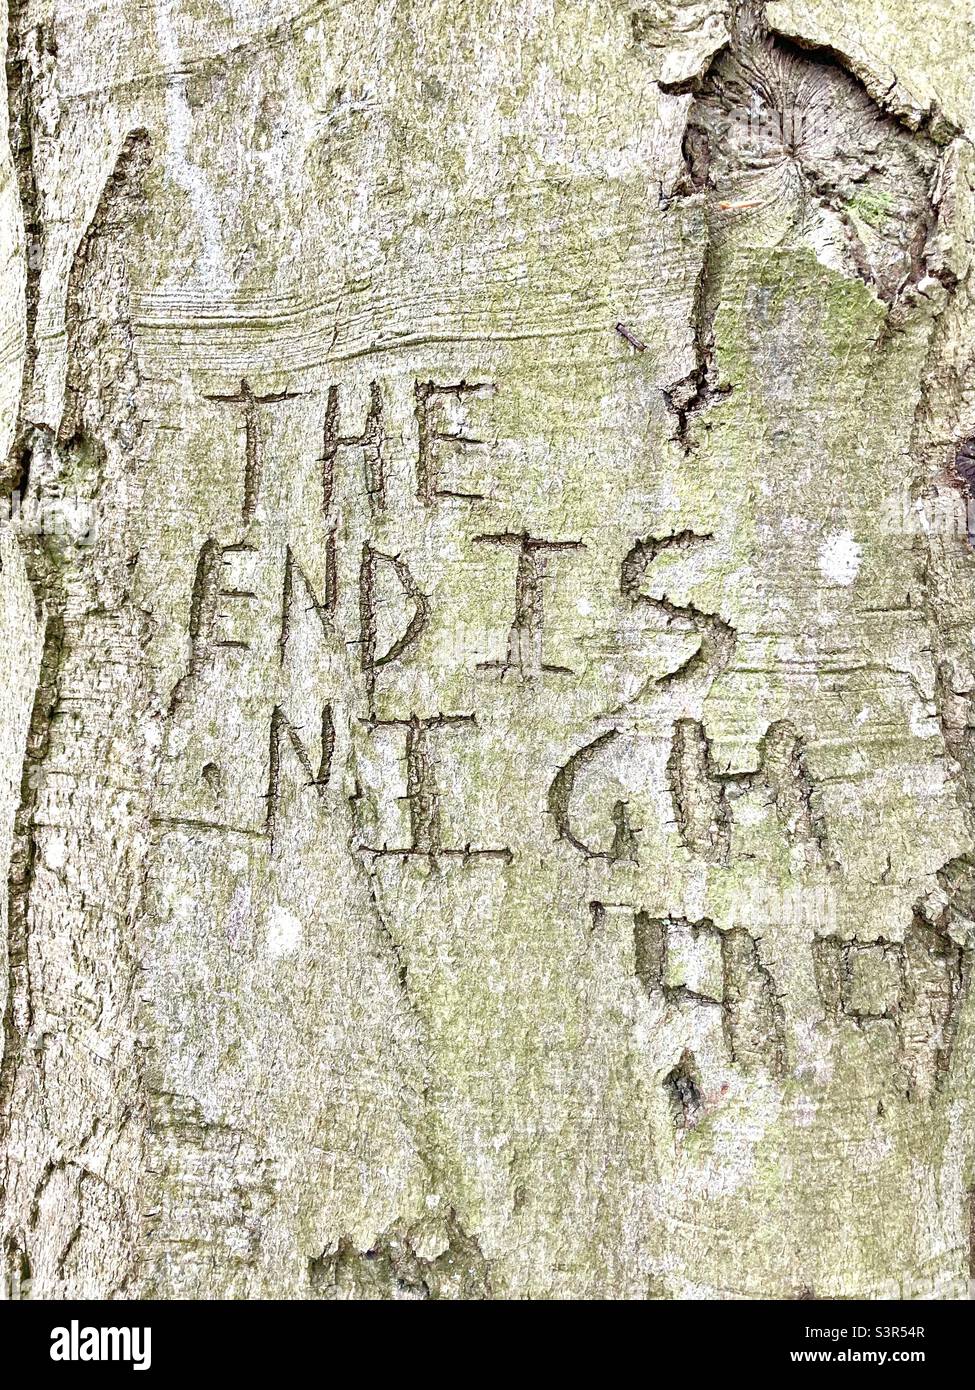 L'extrémité est en bois de Nigh sur le tronc de l'arbre Banque D'Images